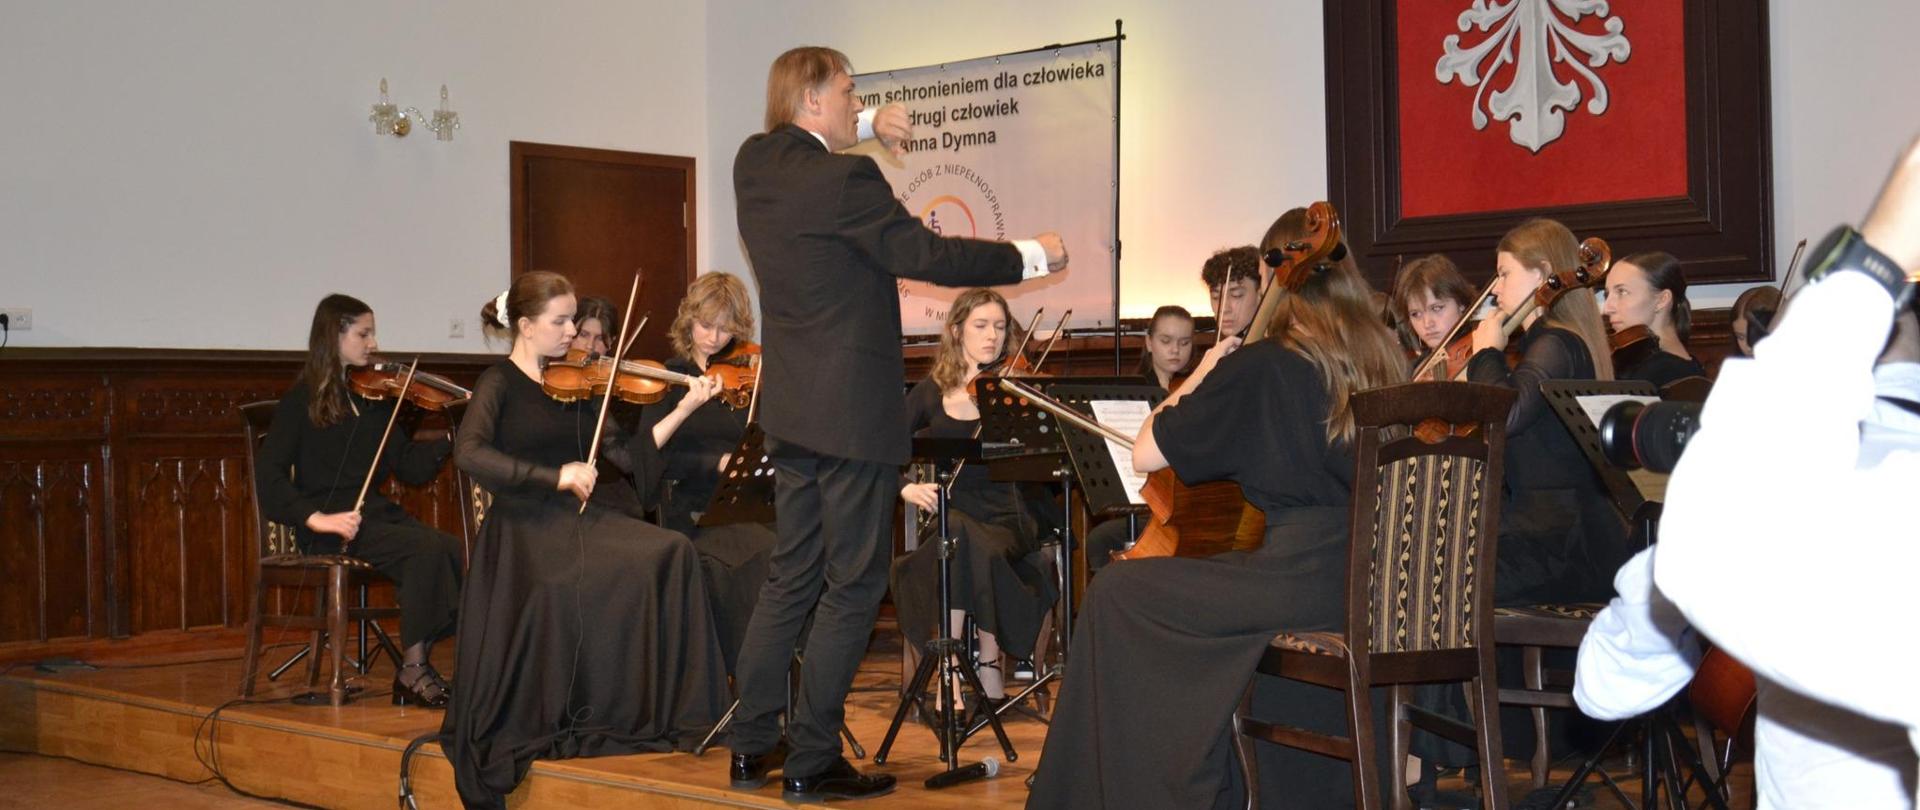 Orkiestra PSM II stopnia w Mielcu na scenie mieleckiej szkoły muzycznej podczas koncertu w ramach inauguracji działalności STOWARZYSZENIA OSÓB Z NIEPEŁNOSPRAWMNOŚCIAMI "TACYSAMI".